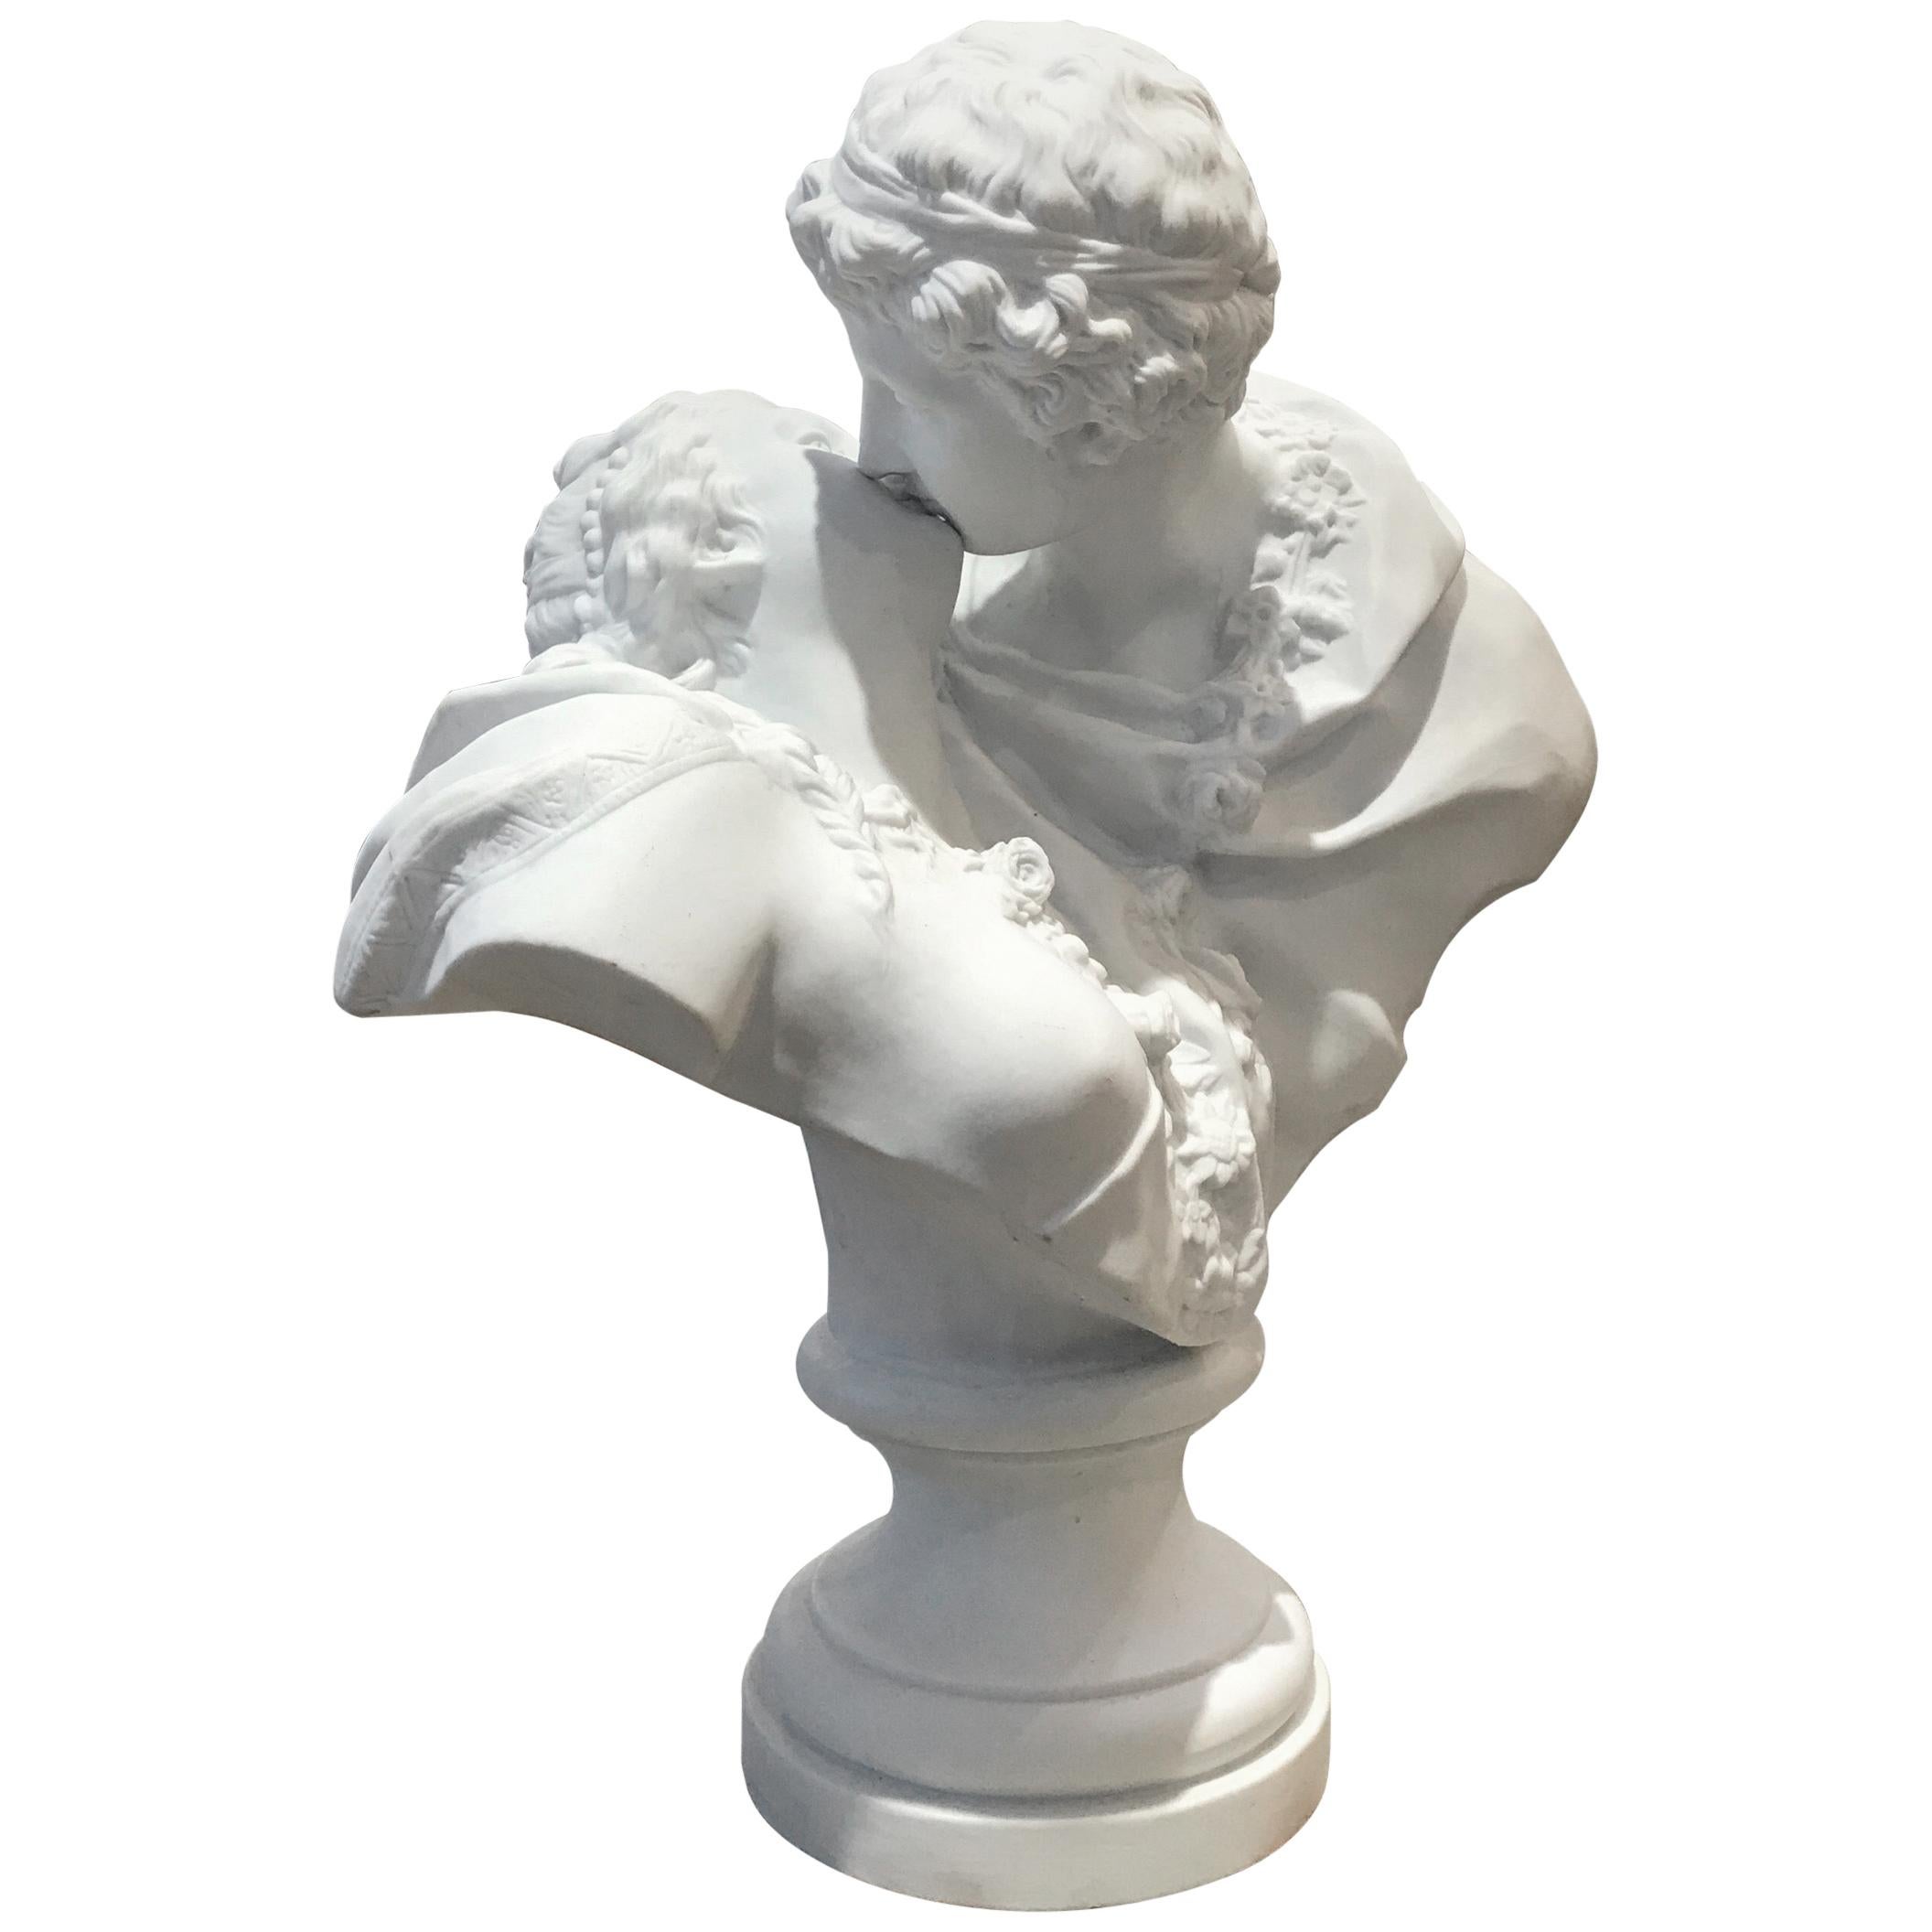 Antique Parian Porcelain Romantic Sculpture After Houdon the Kiss